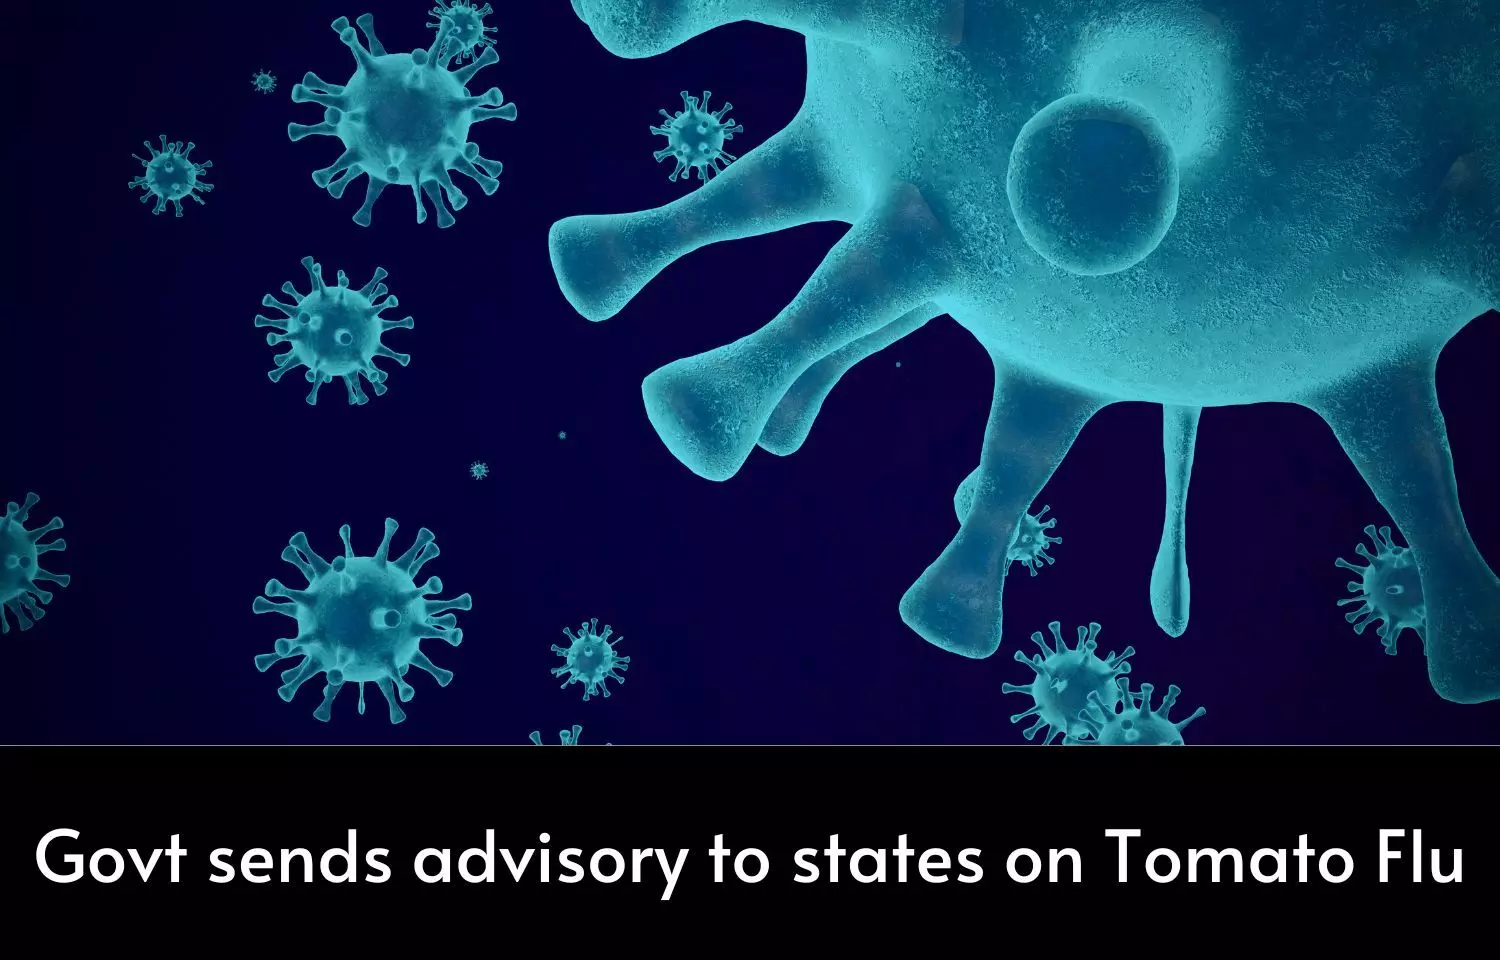 Govt issues Tomato flu advisory to states